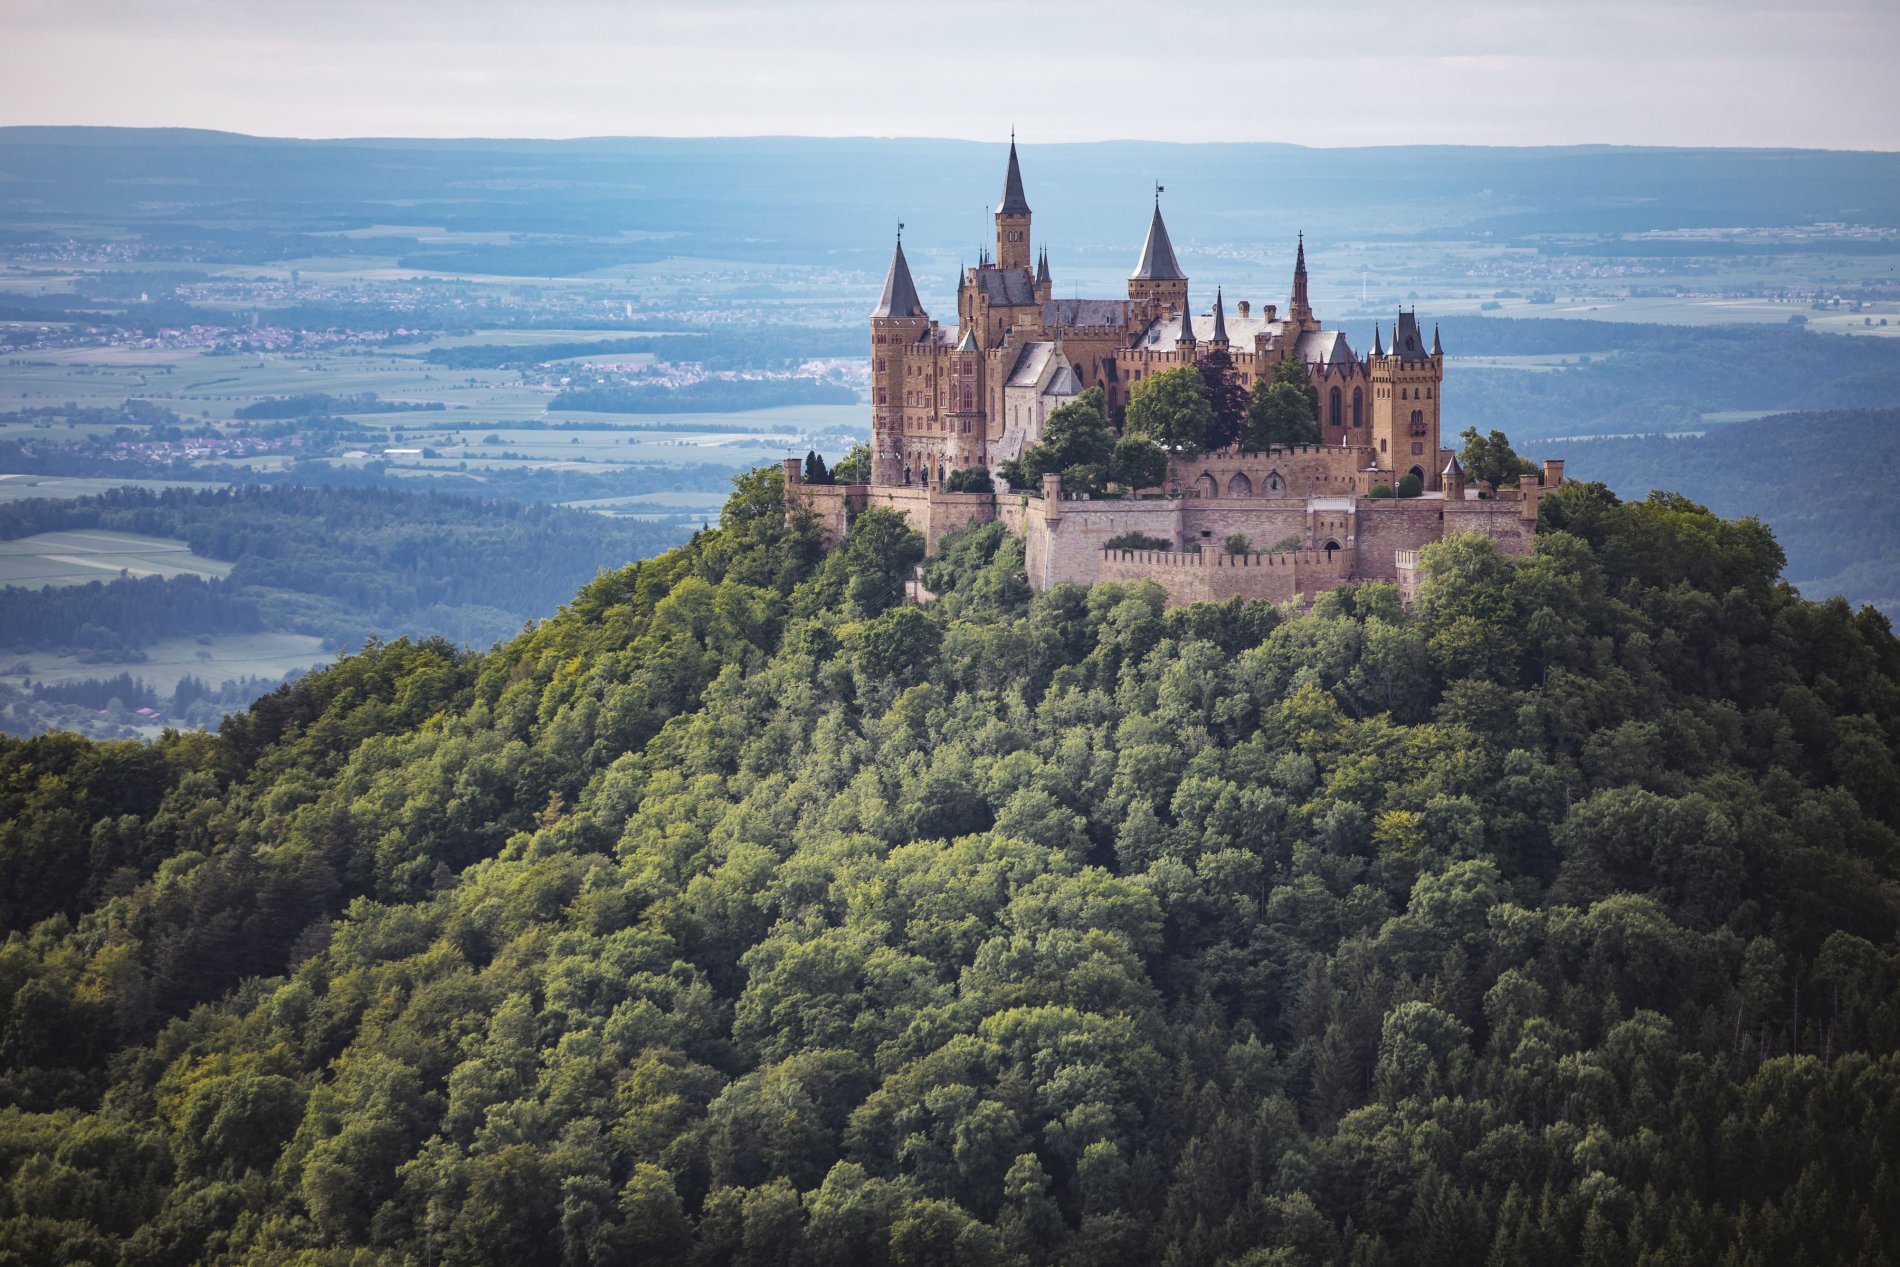 Da thront sie... die Burg Hohenzollern